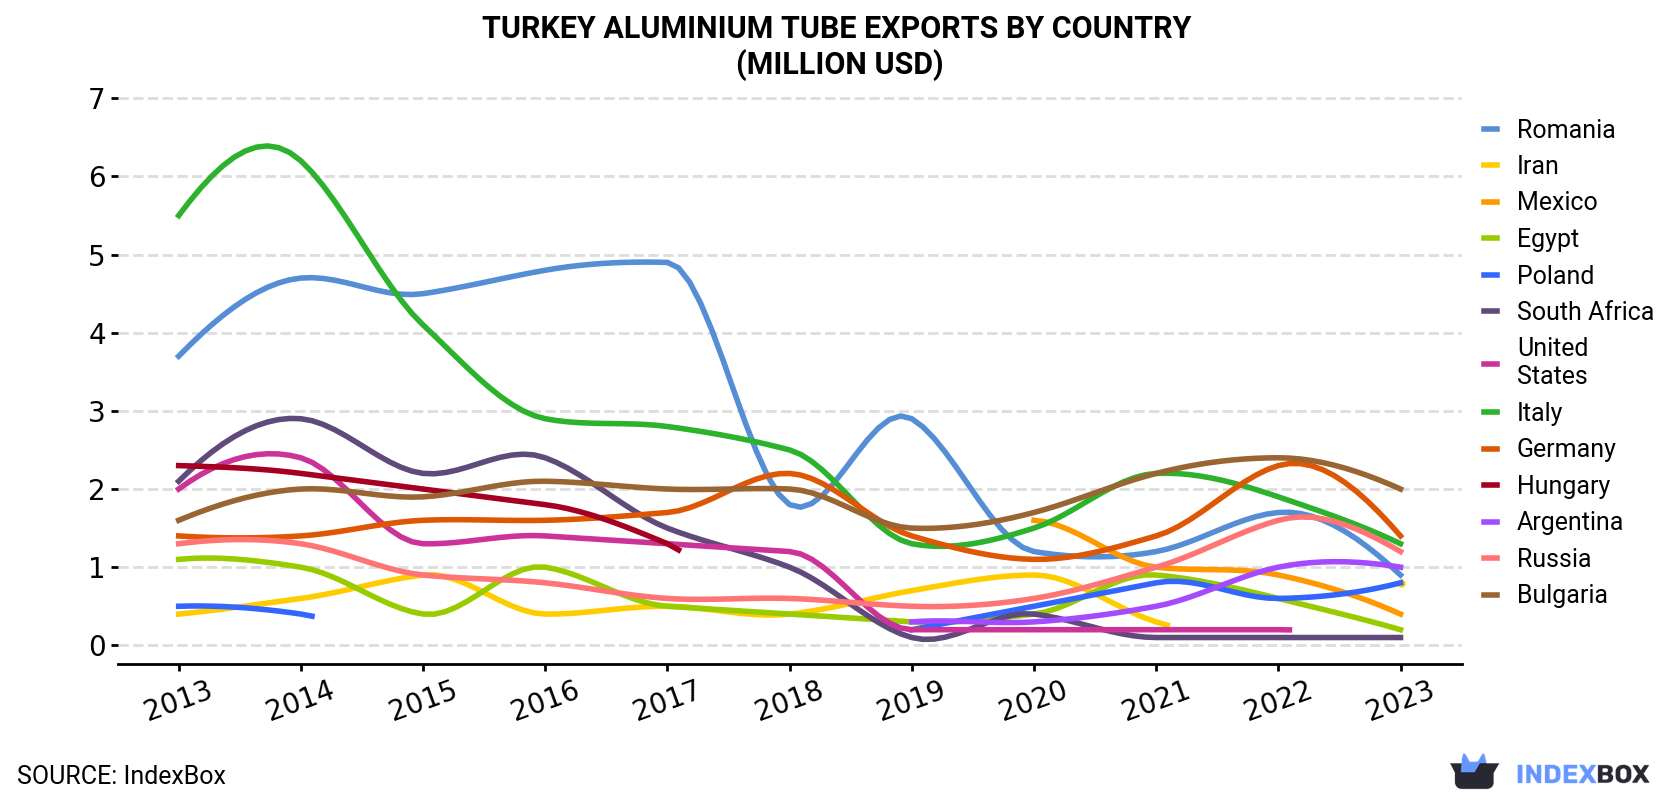 Turkey Aluminium Tube Exports By Country (Million USD)